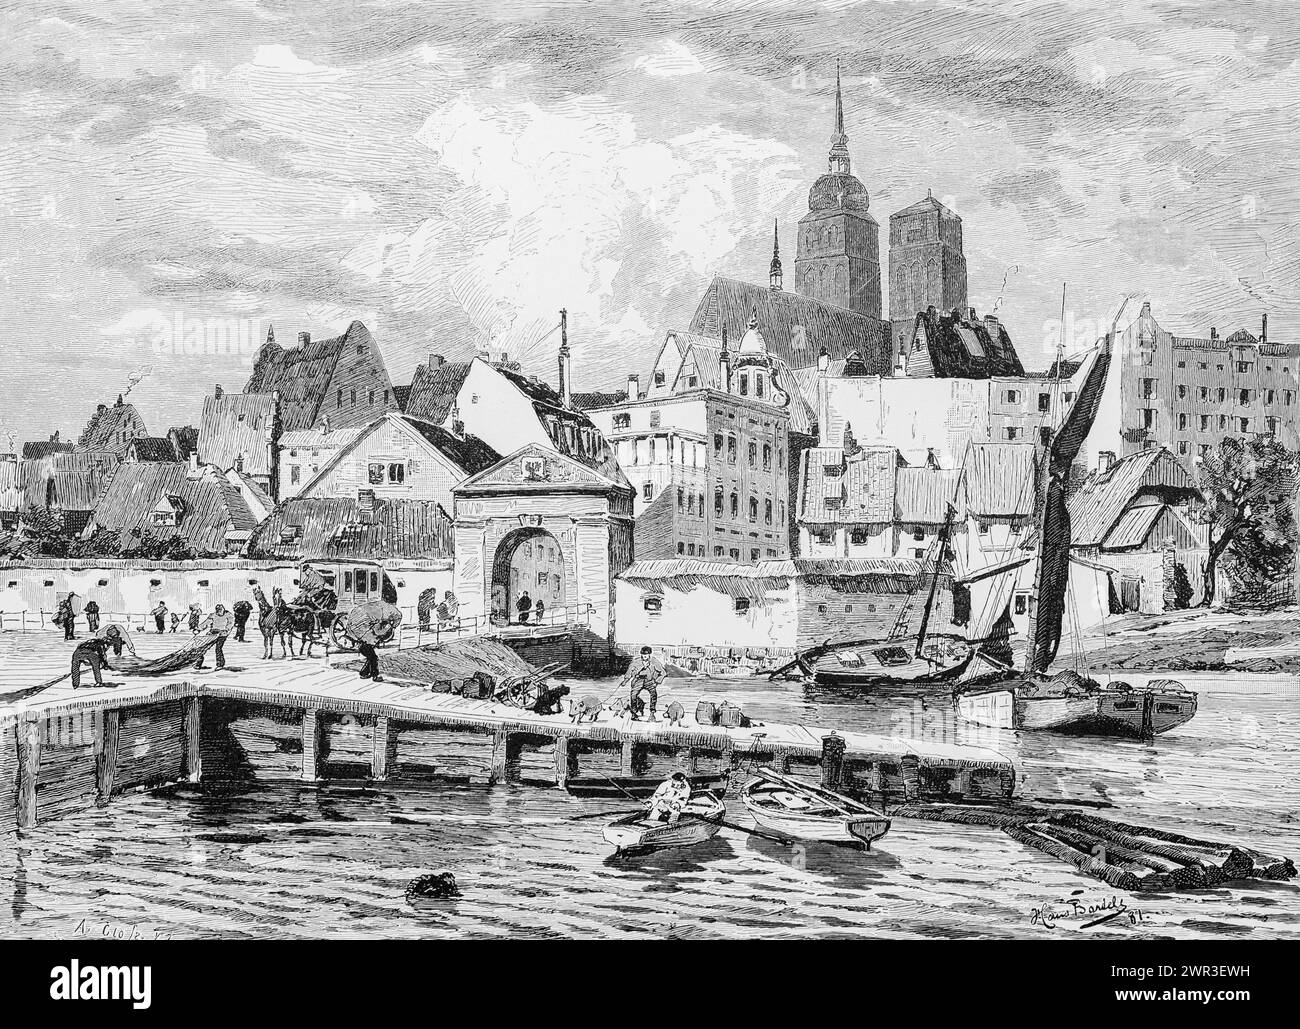 Stadtbild von Stralsund, Stadttor, Stadtmauer, Ostsee, Segelschiff, Menschen, Hafen, Steg, Kirche, Mecklenburg-Vorpommern, Deutschland Stockfoto